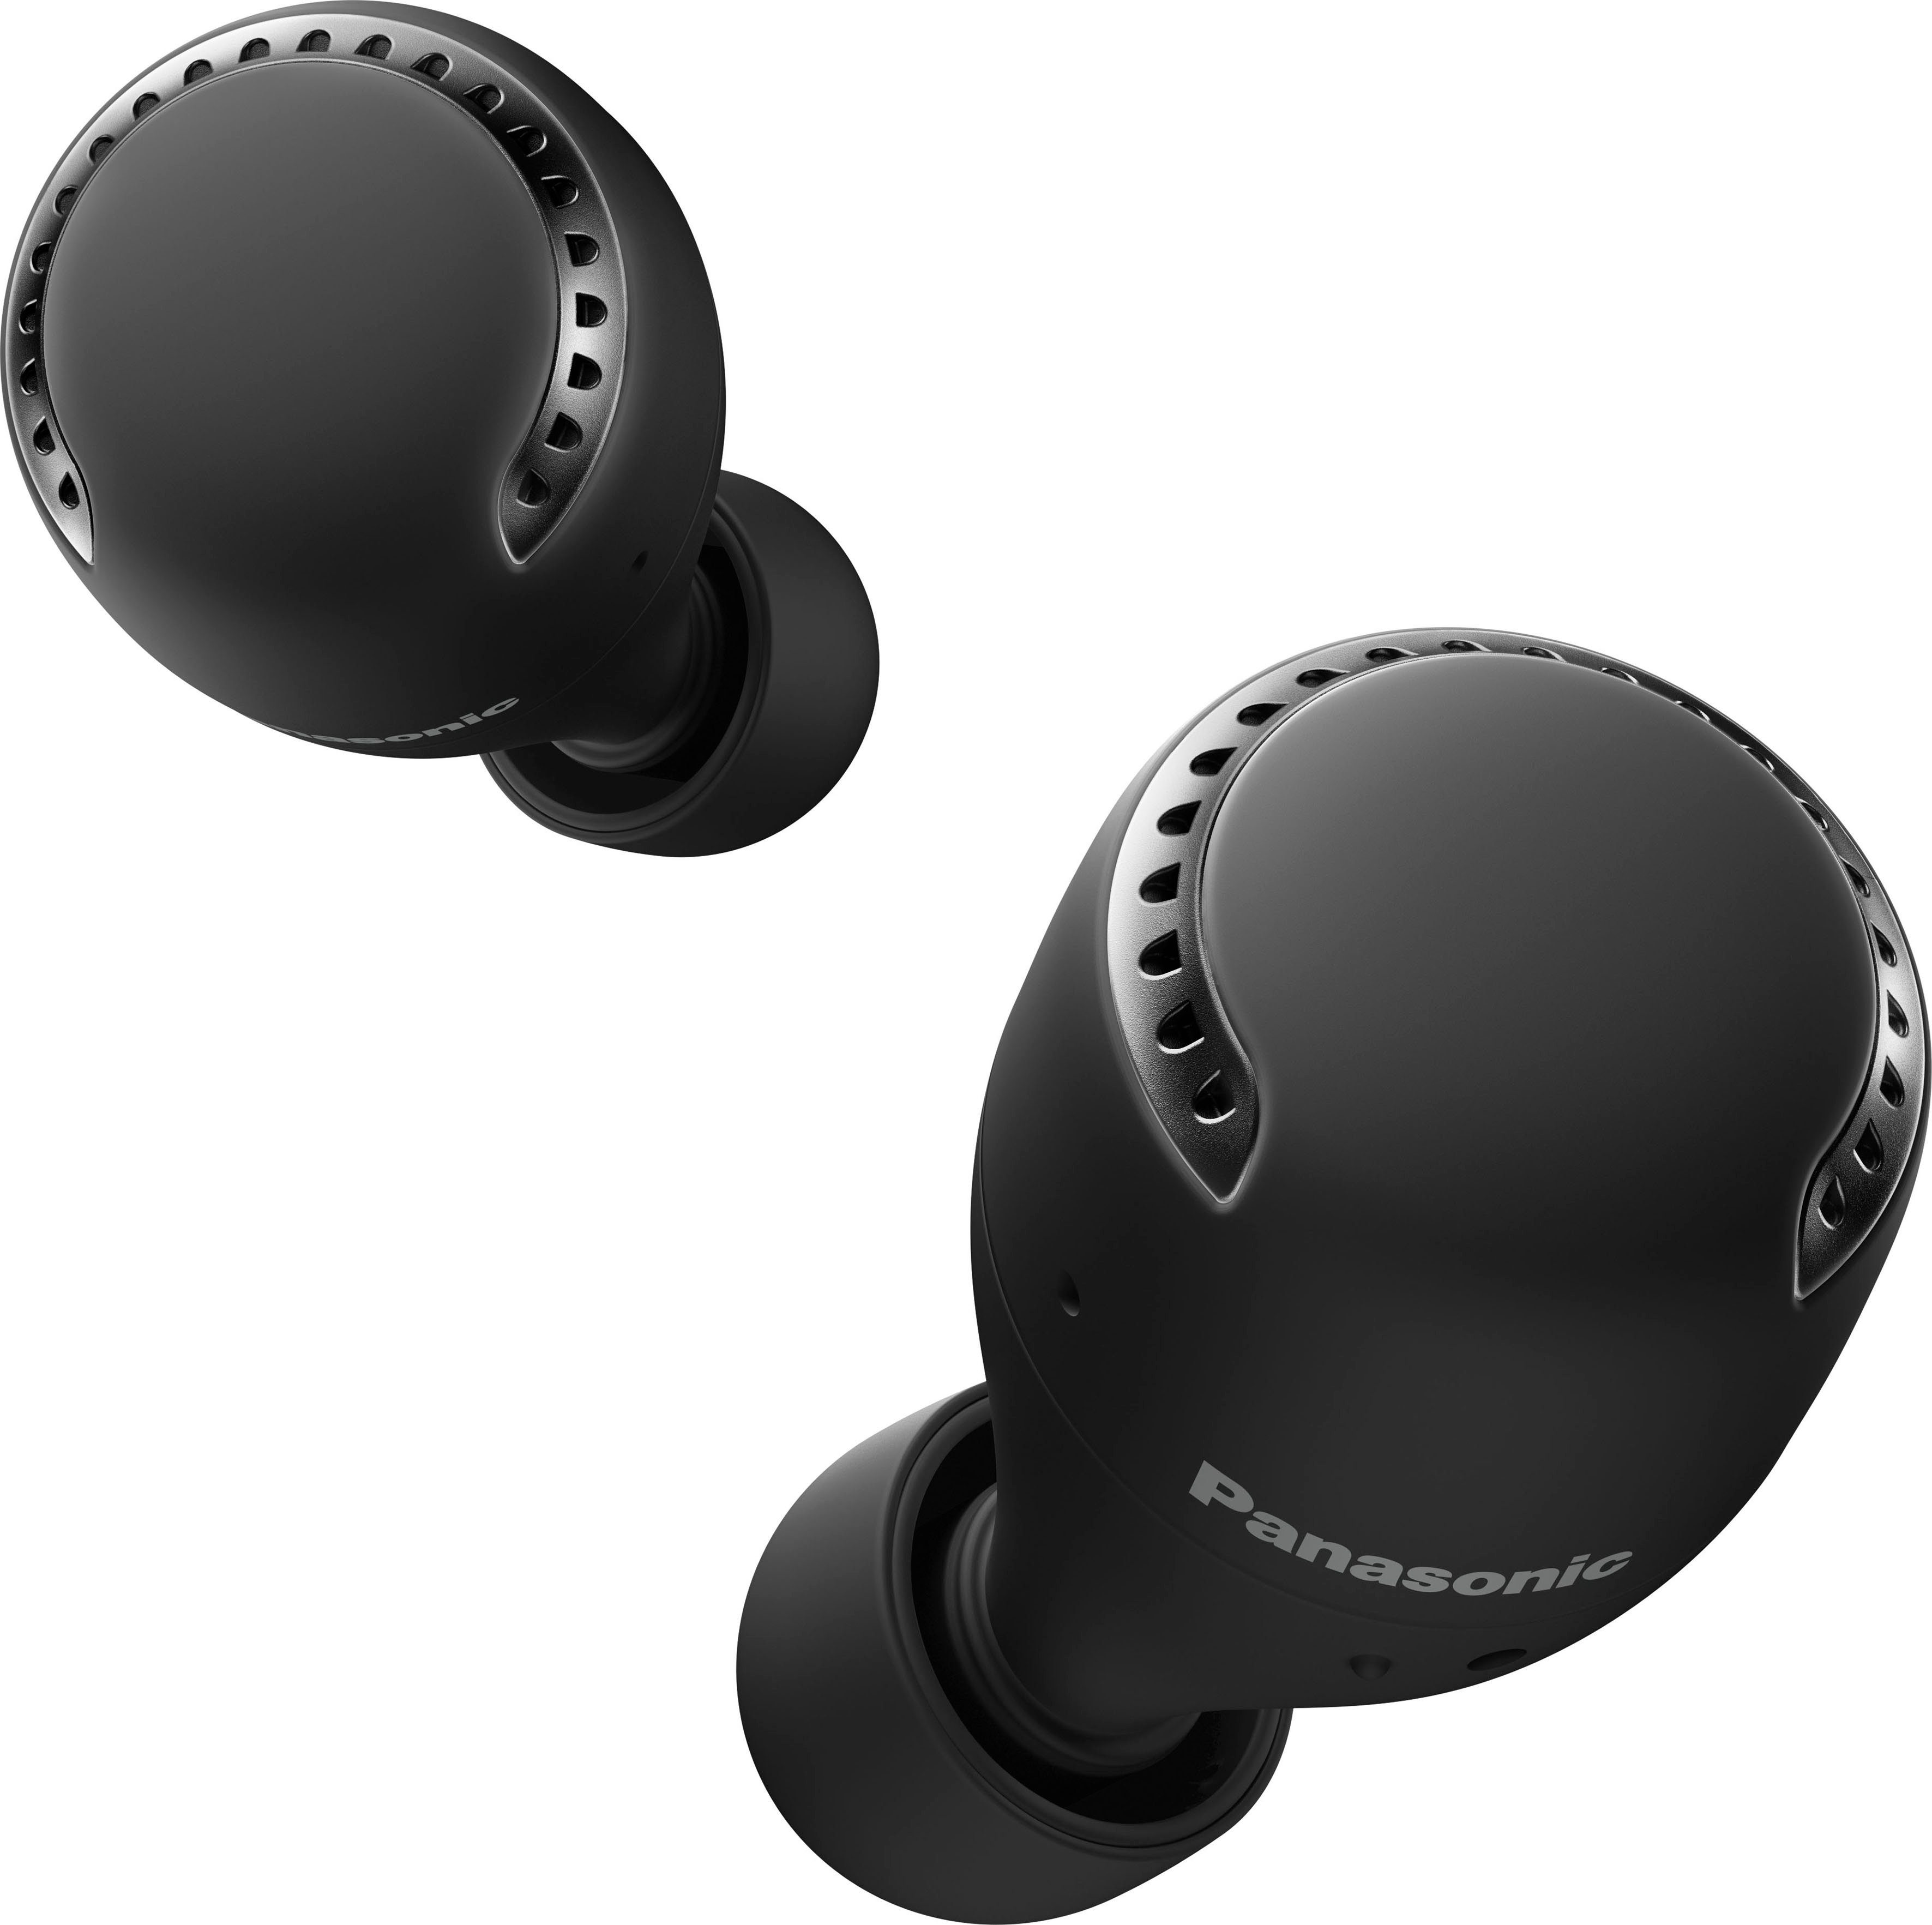 Panasonic RZ-S500WE wireless In-Ear-Kopfhörer Bluetooth) (Noise-Cancelling, Sprachsteuerung, Wireless, schwarz True